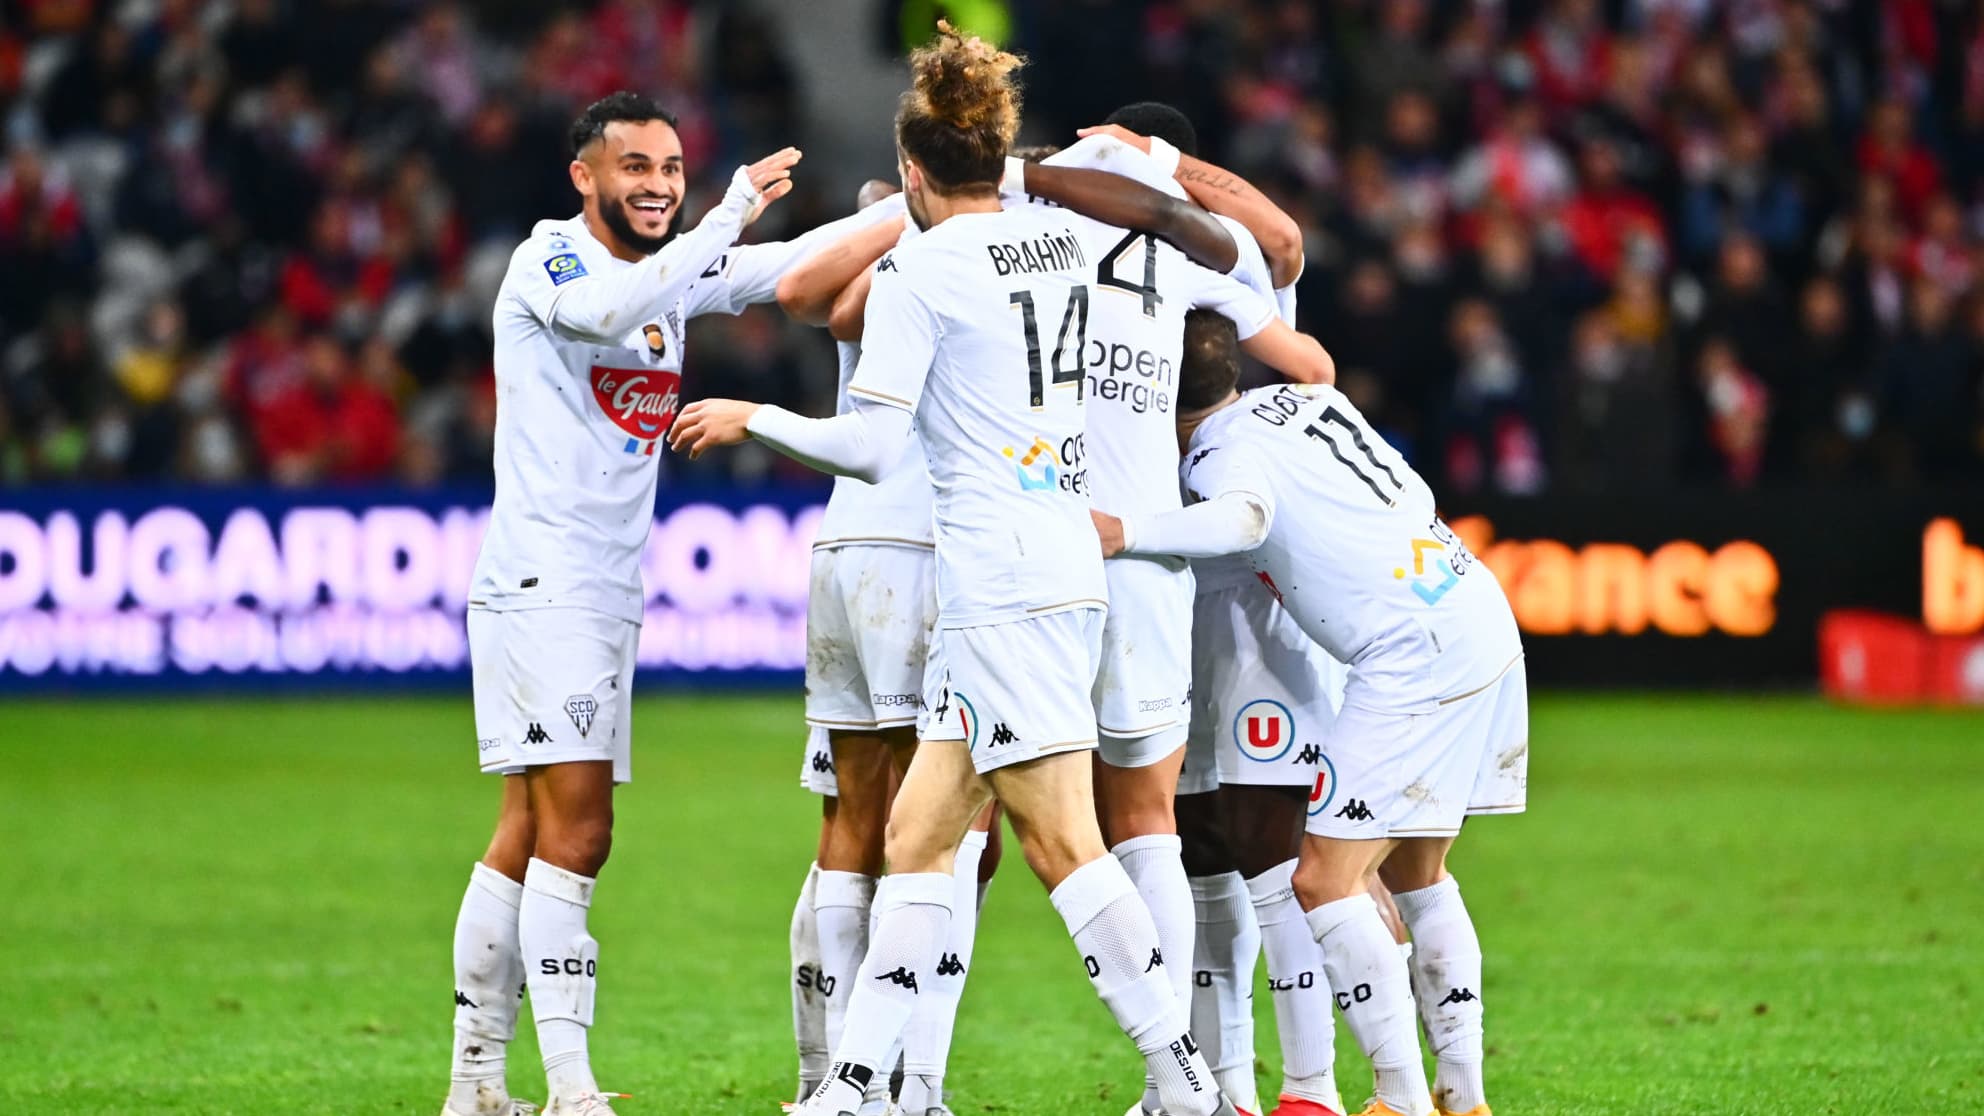 PRONOS PARIS RMC Home Bet for November 21 – Ligue 1